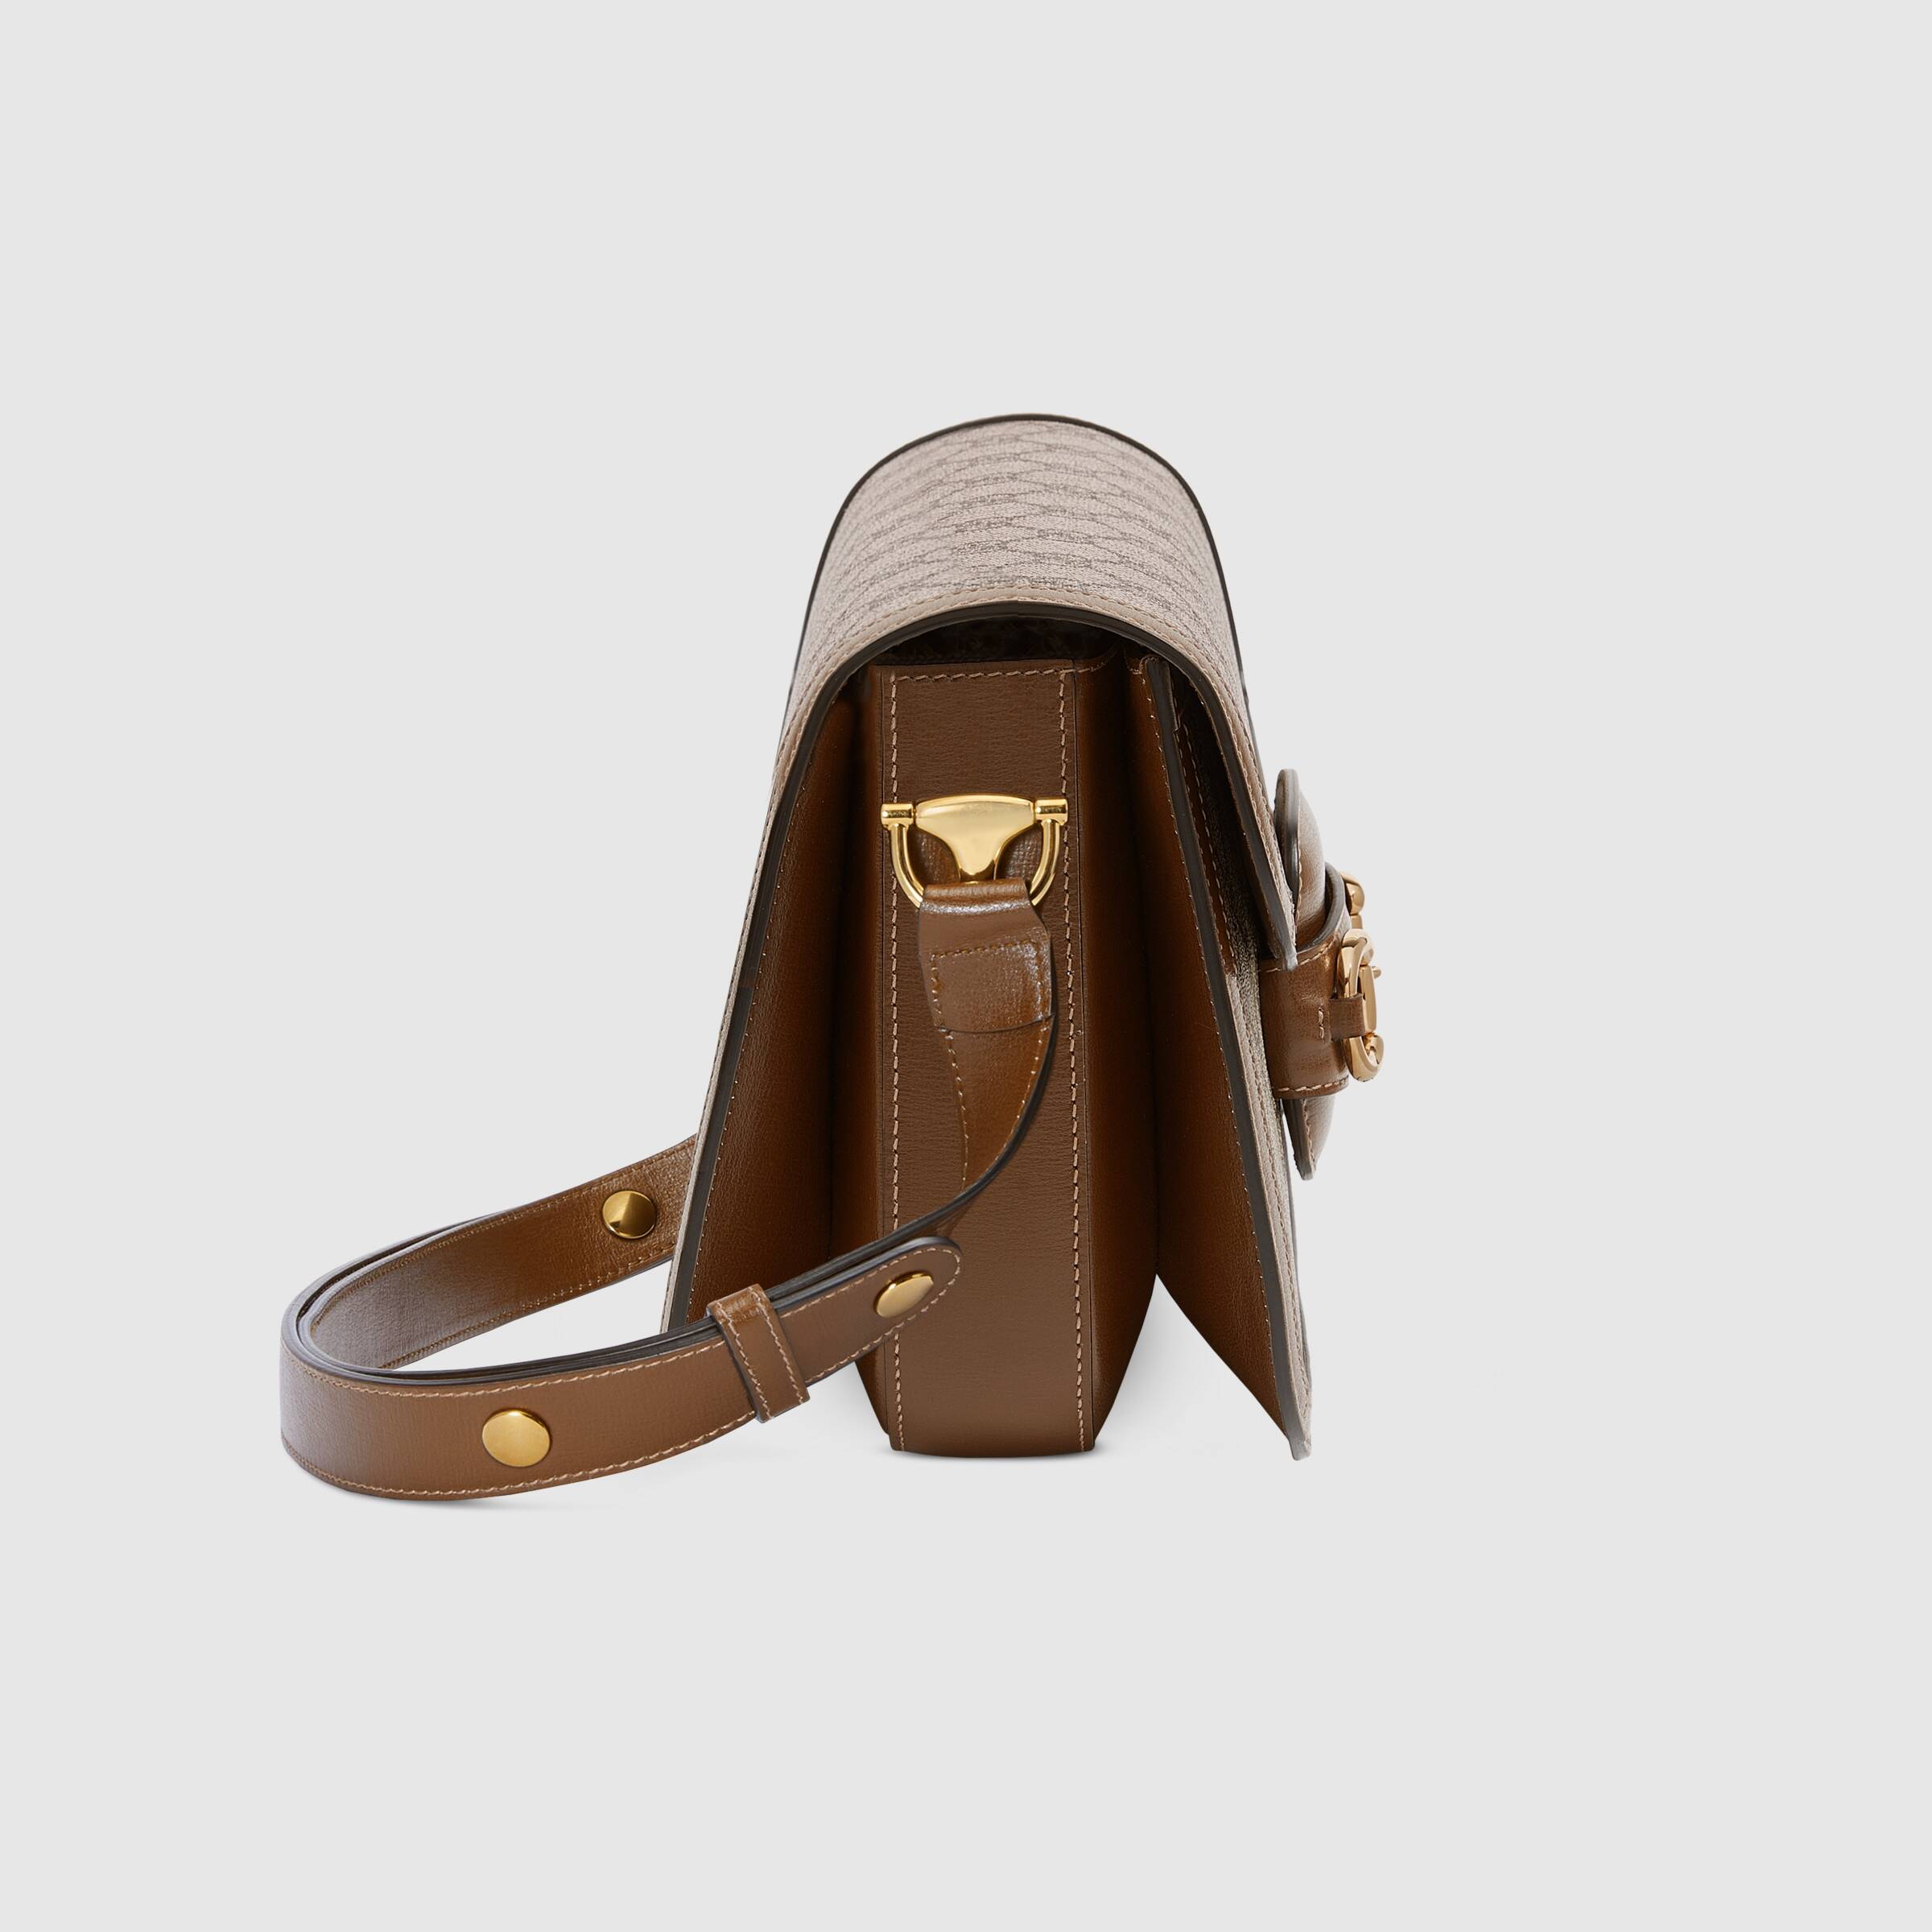 Gucci Online Exclusive Preview Gucci 1955 Horsebit Bag